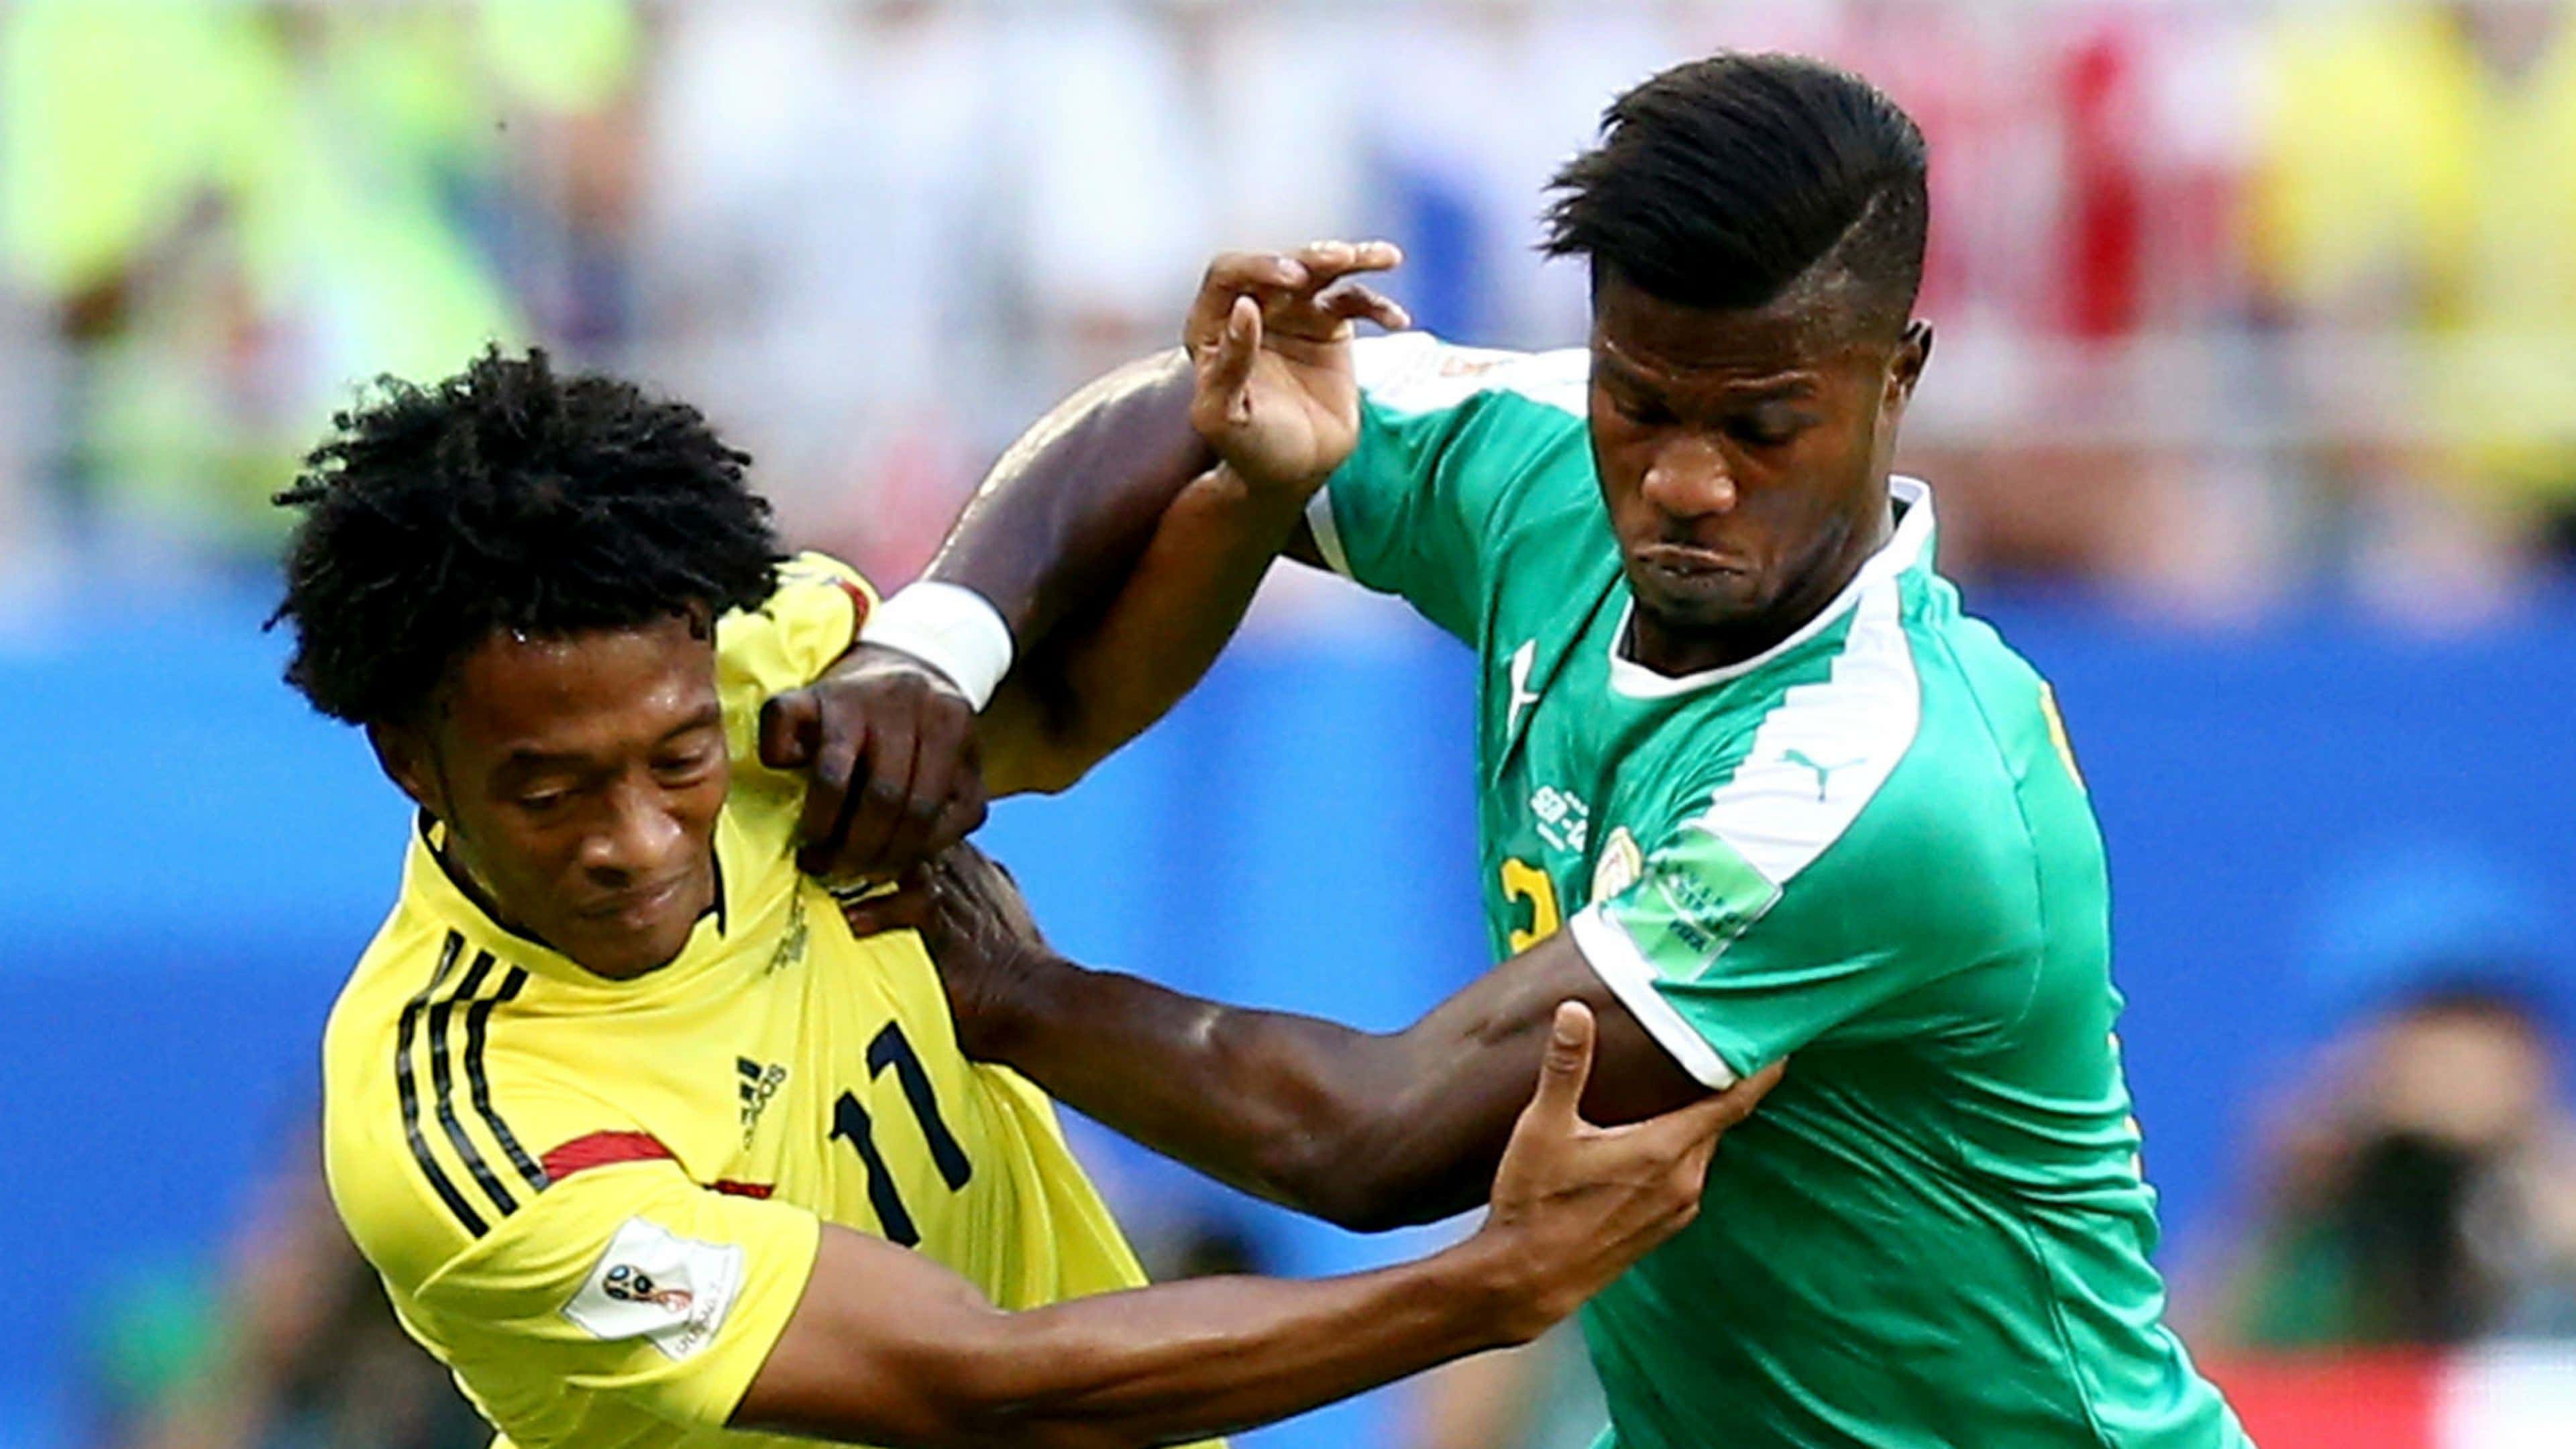 Juan Cuadrado Colombia Keita Balde Senegal World Cup 2018